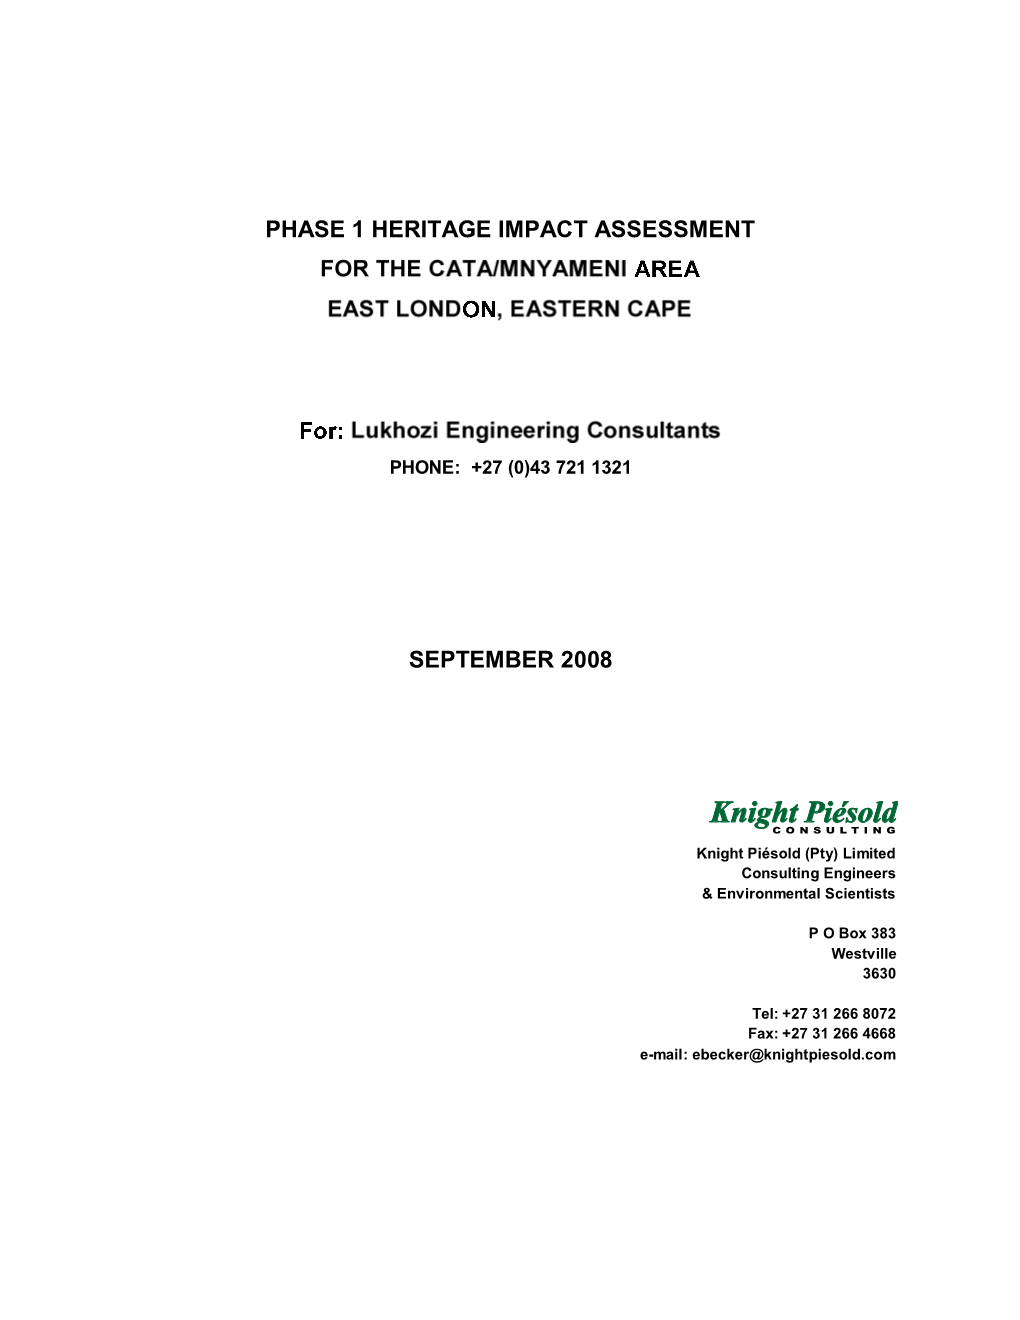 Phase 1 Heritage Impact Assessment September 2008